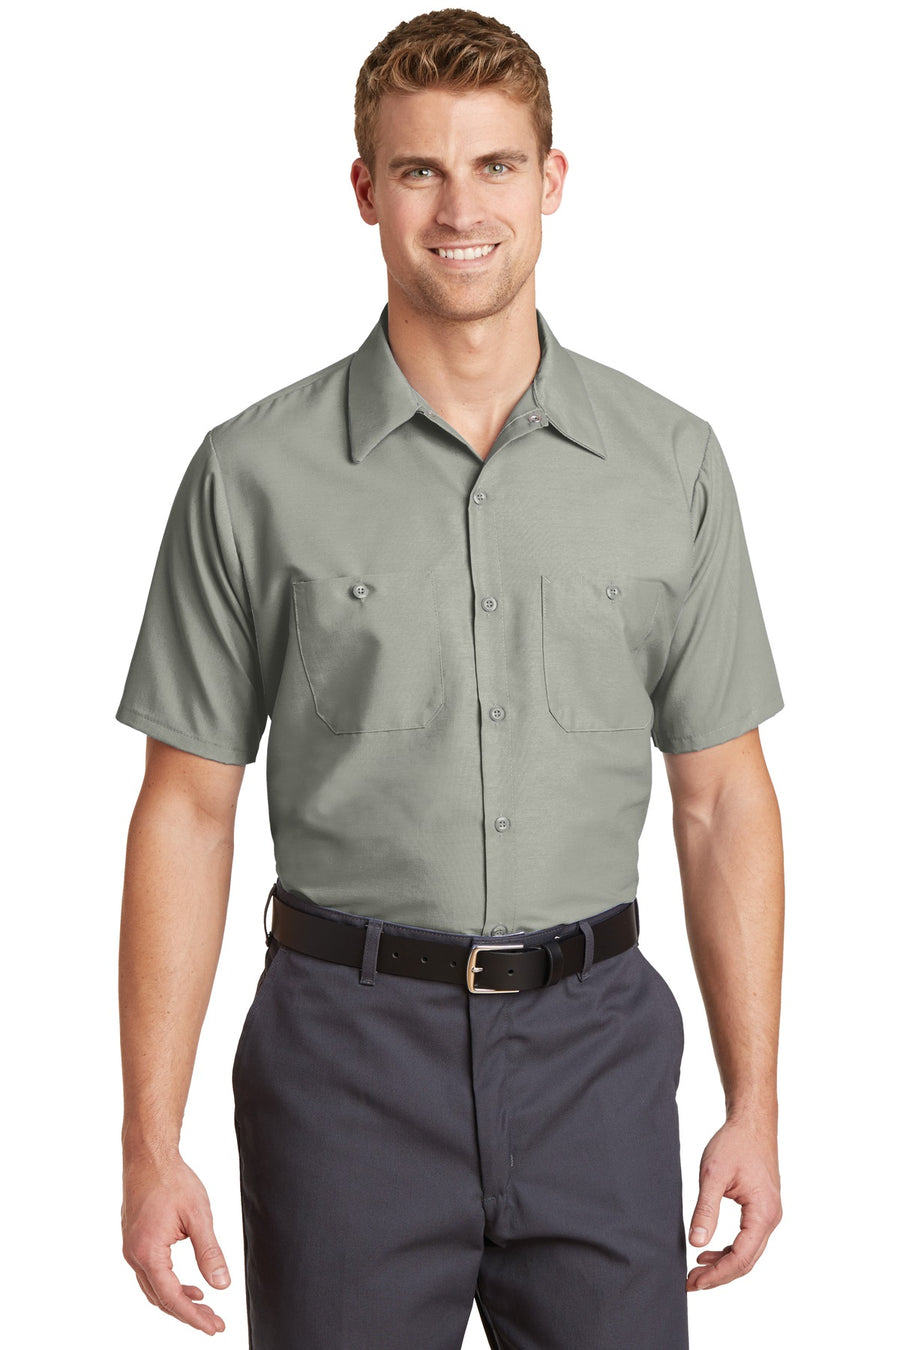 Red Kap Long Size Short Sleeve Industrial Work Shirt.